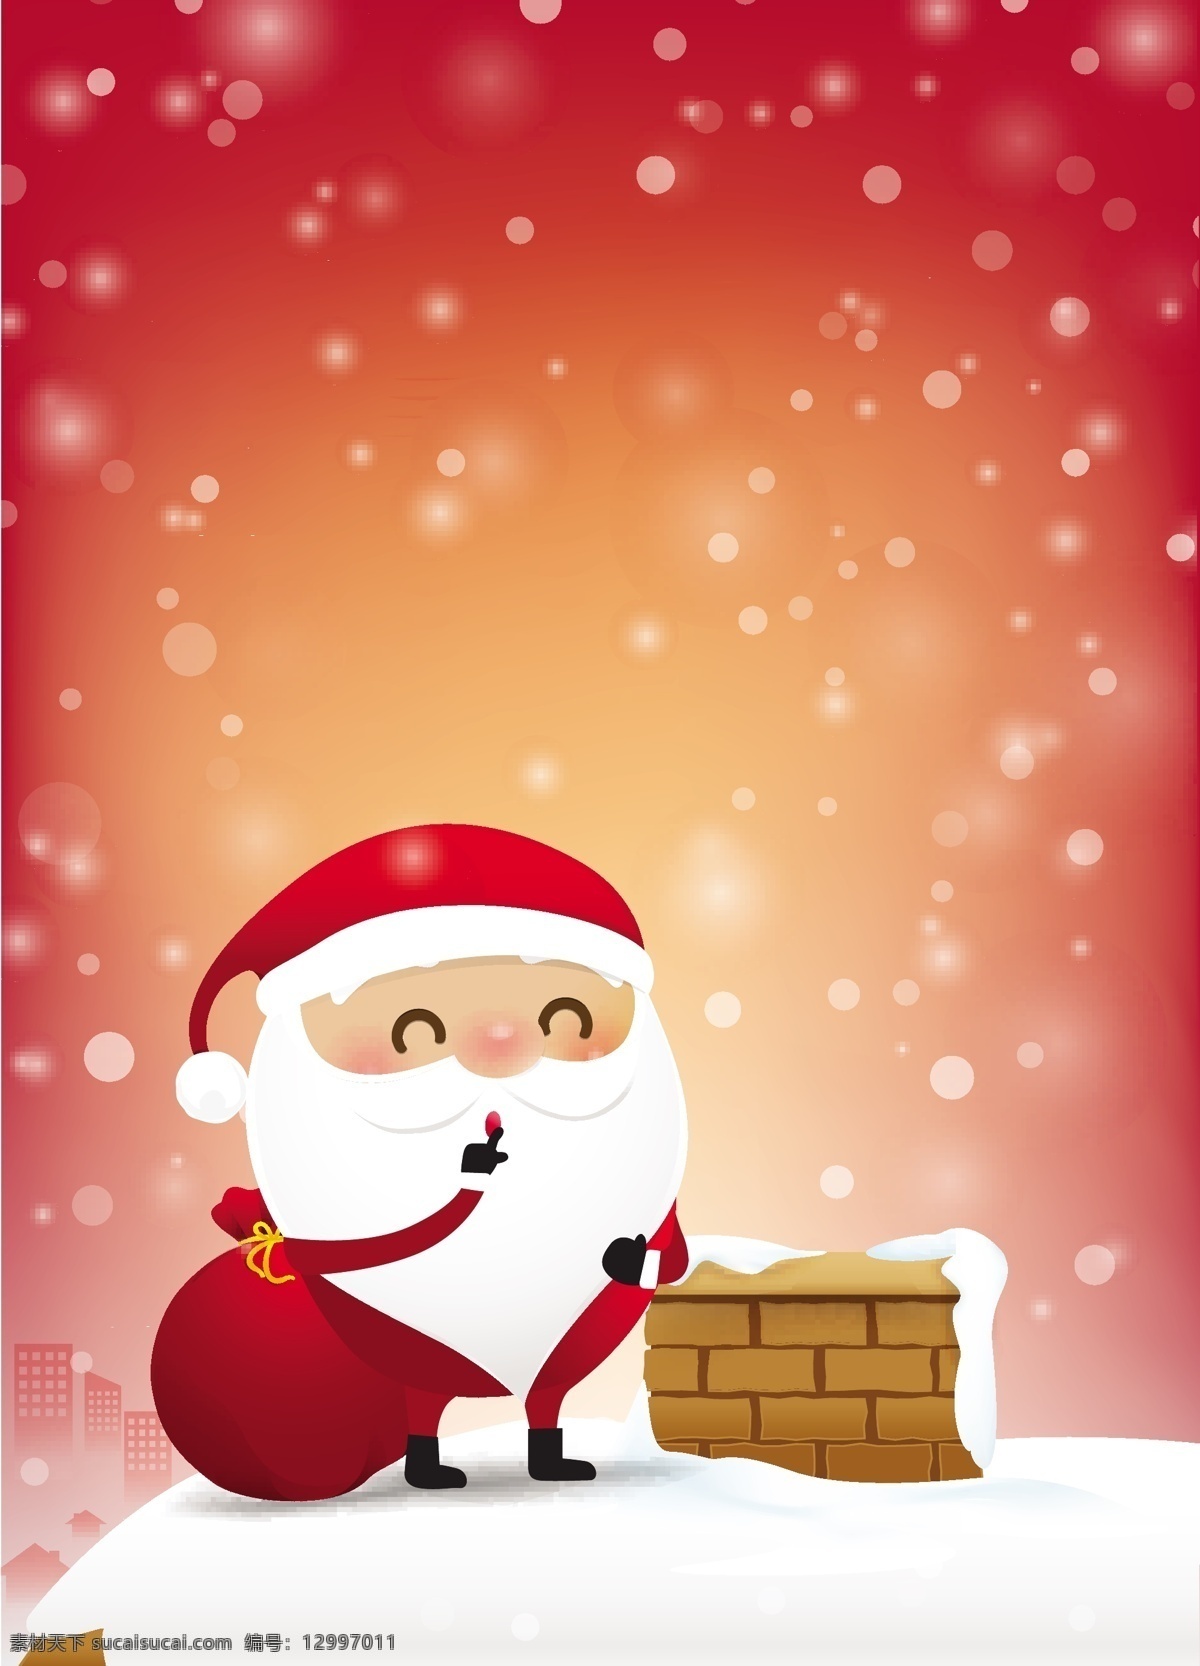 圣诞老人矢量 红色渐变 背景 雪花飘雪 圆点 雪地 烟囱 礼物袋 圣诞老人 礼物礼品 节日 圣诞节 圣诞快乐 圣诞礼物 喜庆 矢量素材